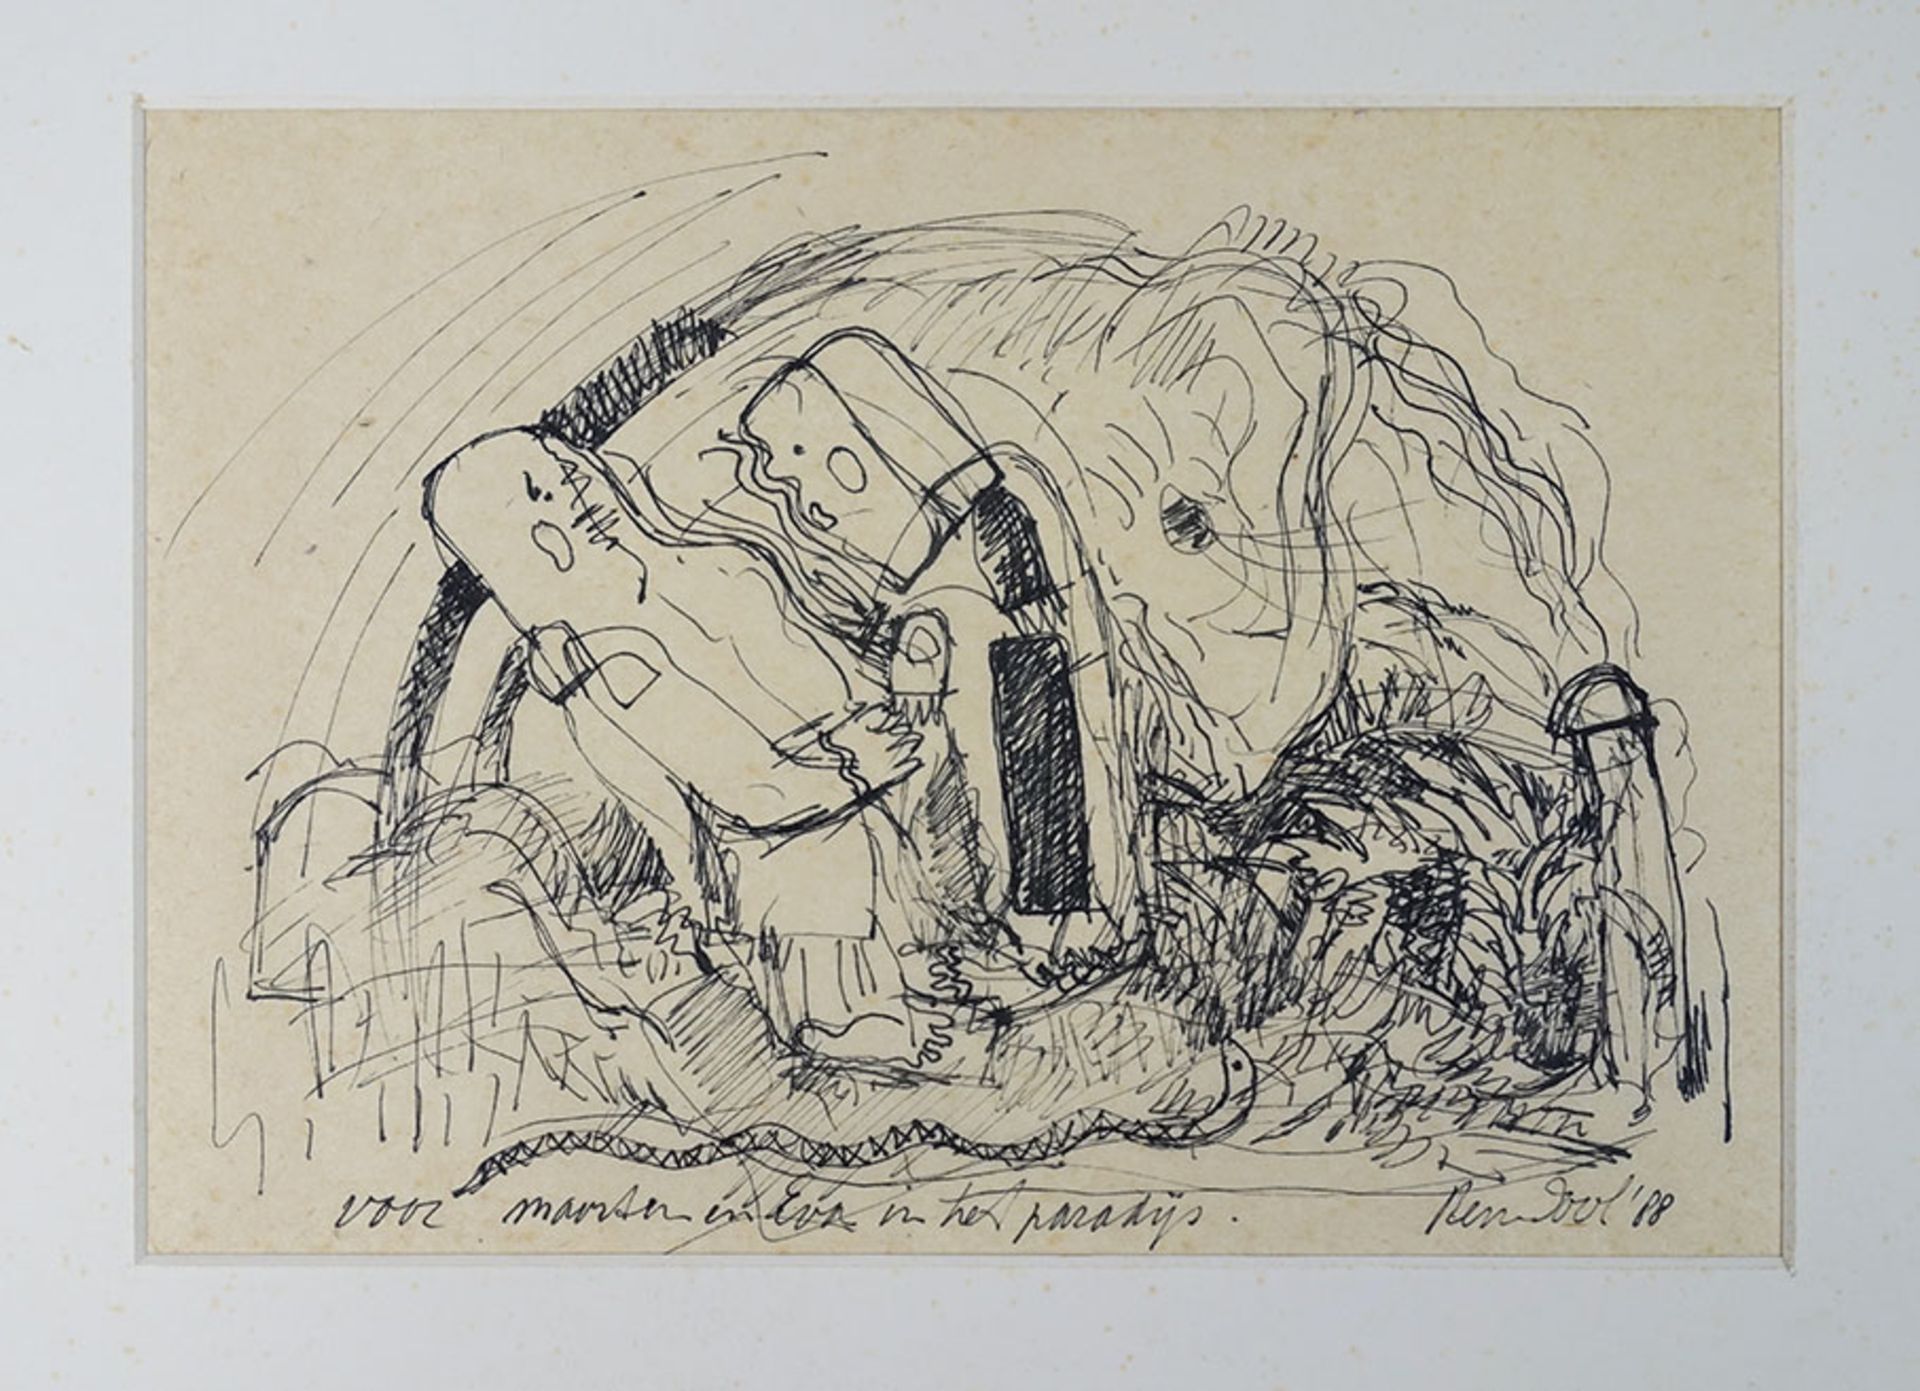 DOOL, Rein (b. 1933). "Voor Maarten en Eva in het paradijs". 1988. Drawing in ink on paper. 215 x